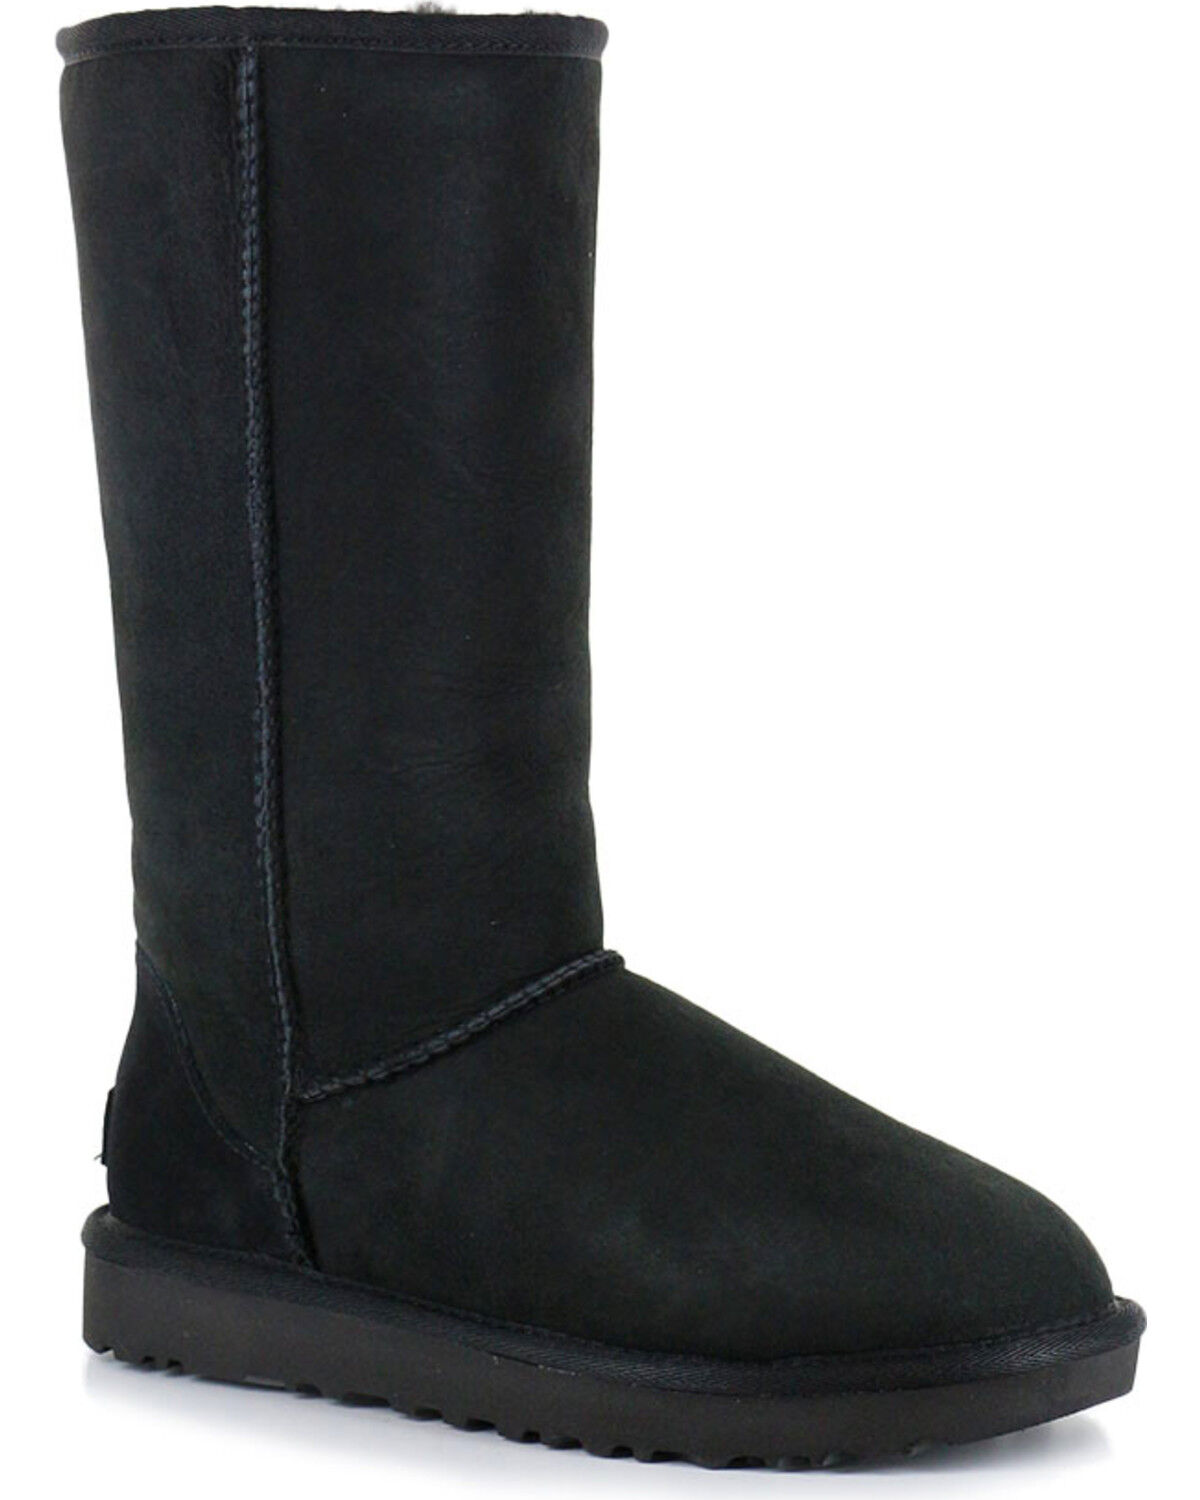 black ugg boots on sale